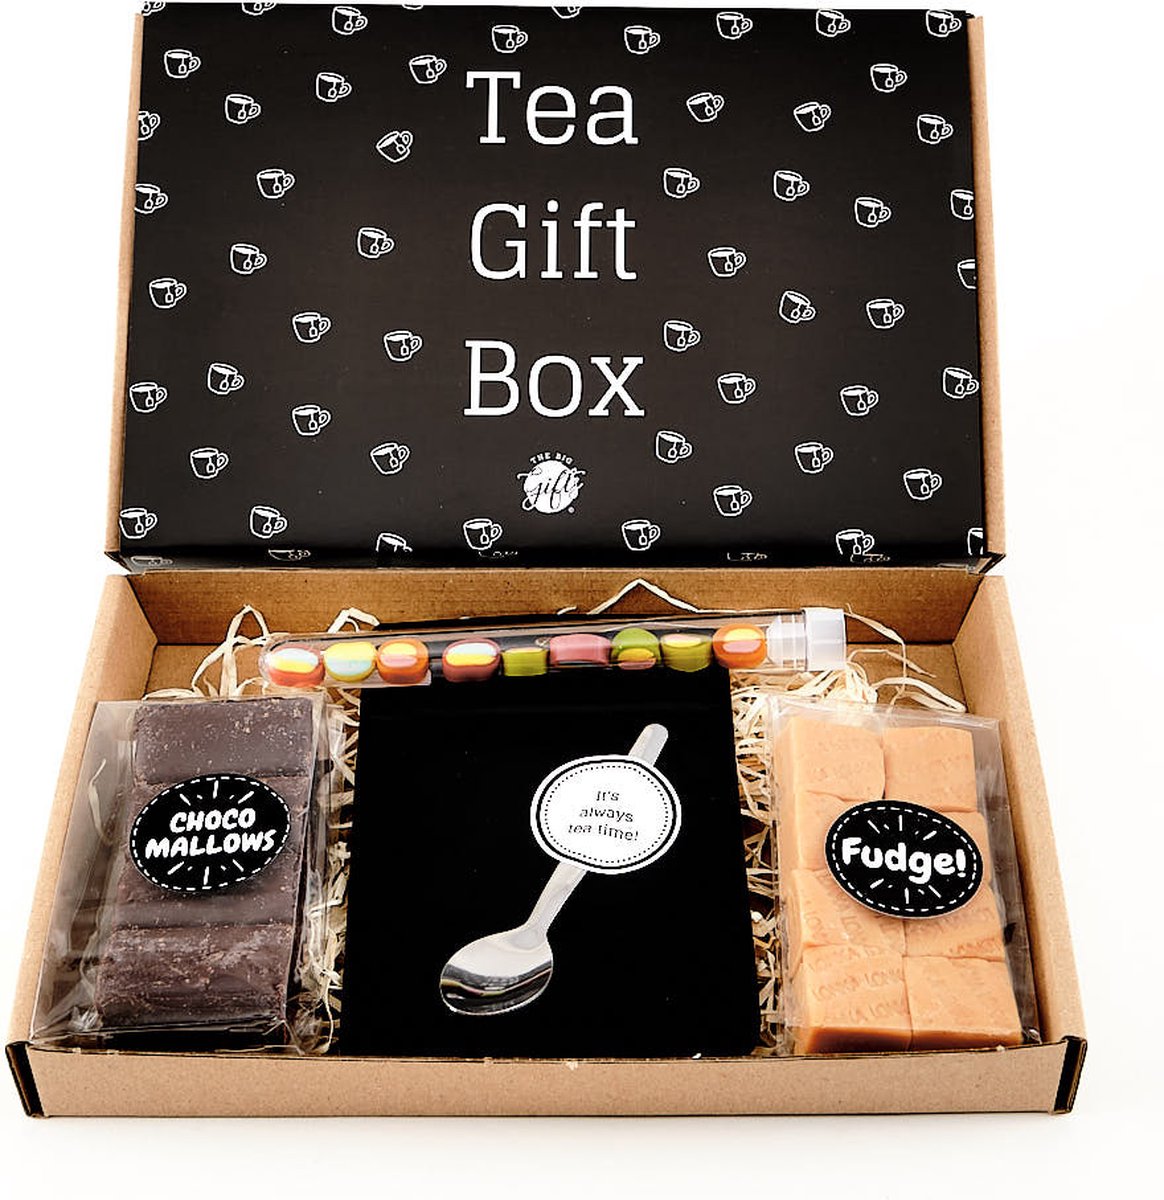 Brievenbuspakket tea gift box - Cadeau - THEE - Brievenbus pakket - The Big Gifts -chocolade- eten-pasen - snoep - cadeau voor man - cadeau voor vrouw - gift -  cadeaupakket - Moederdag - Vaderdag - giftset - cadeaubox - Merkloos